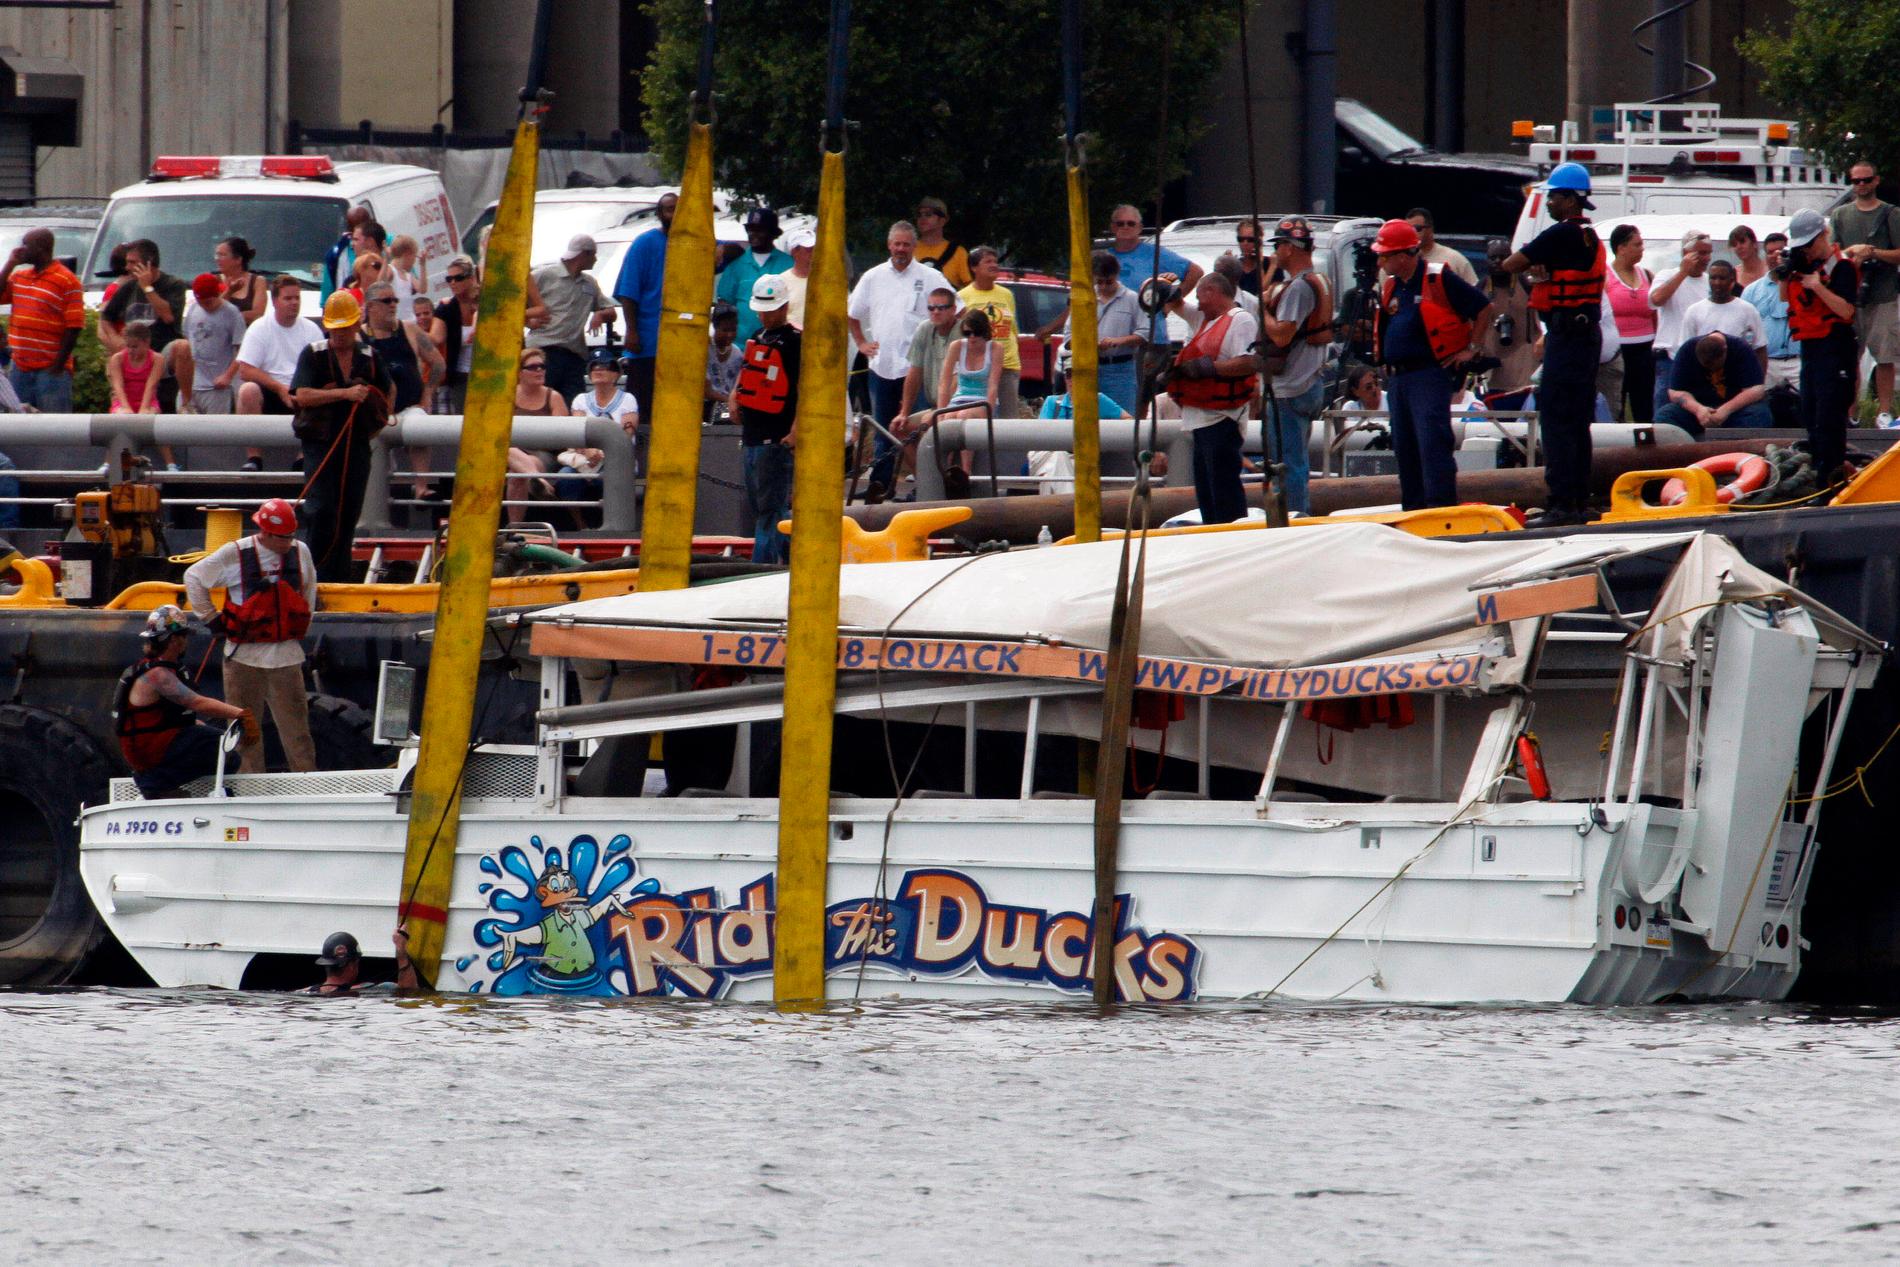 Företaget Ride the Ducks har råkat ut för svåra olyckor tidigare. Här bärgas en farkost i Philadelphia efter en händelse 2010.